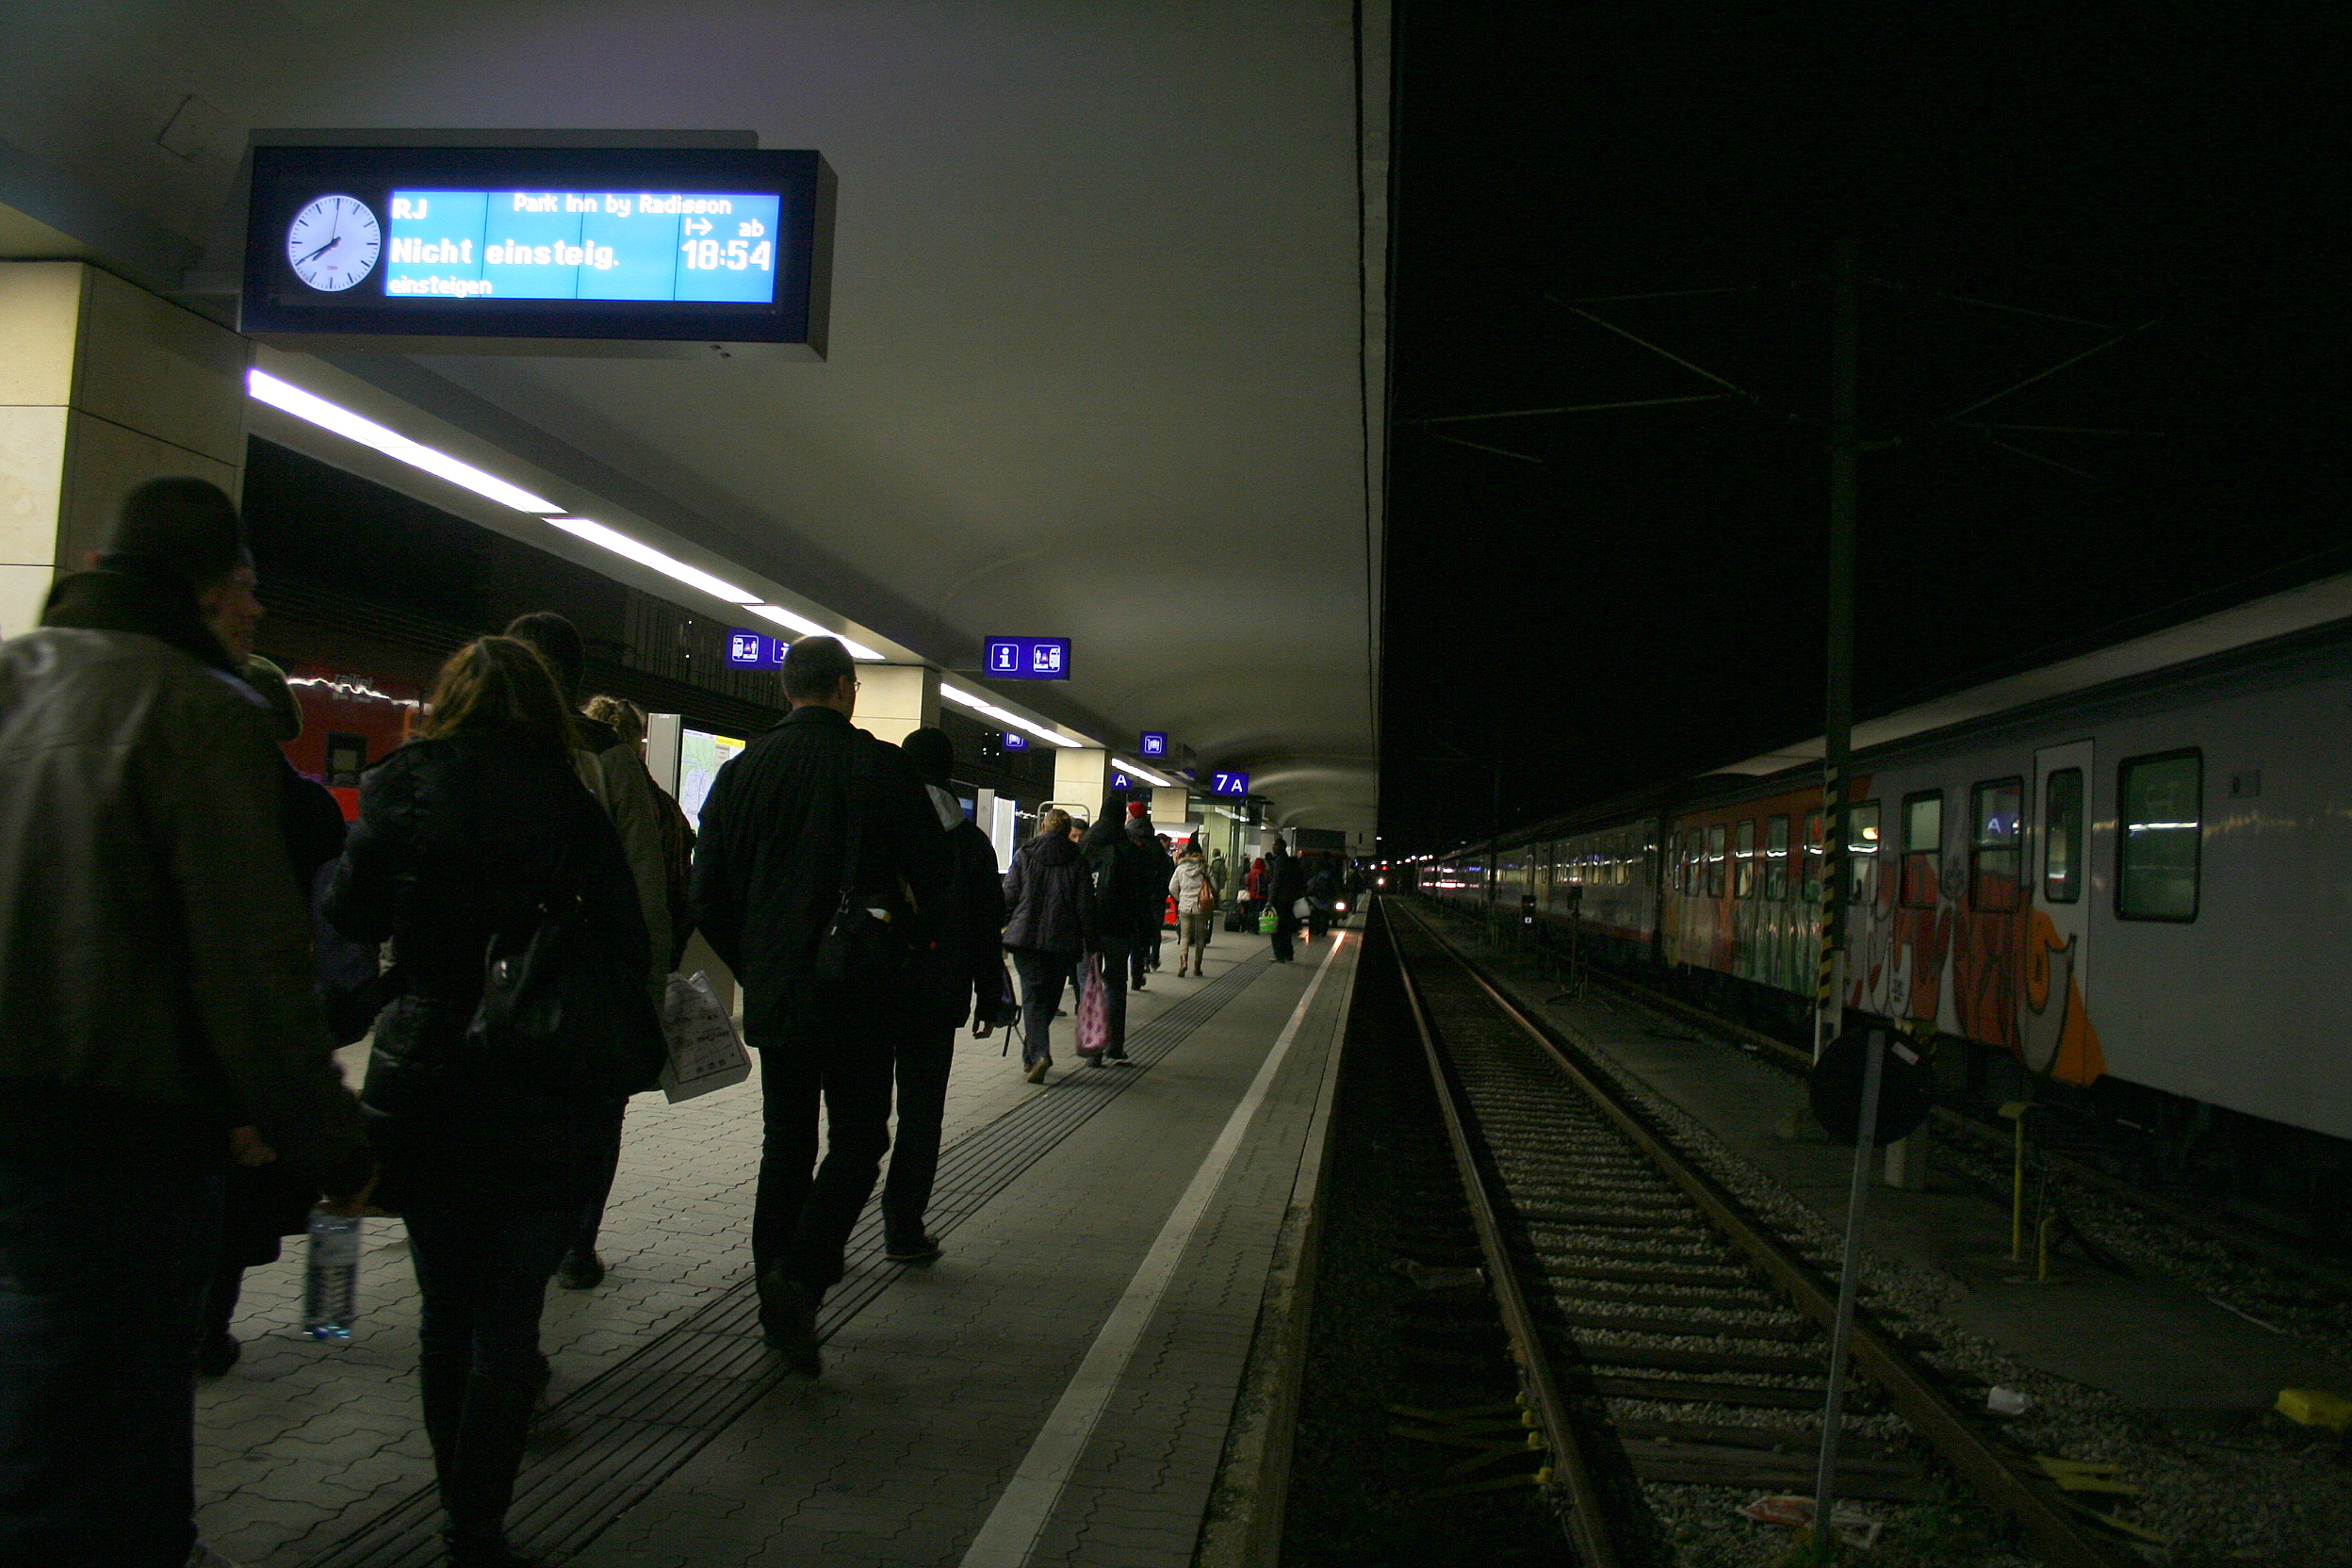 Magyarok tömege érkezett az advent első hétvégéjén Bécsbe, akik mind az utolsó Railjettel szerettek volna hazajutni, egy óra késést kellett elviselniük. Itt már pár percen belül megérkezett a vonat, oda igyekszik az utazóközönség